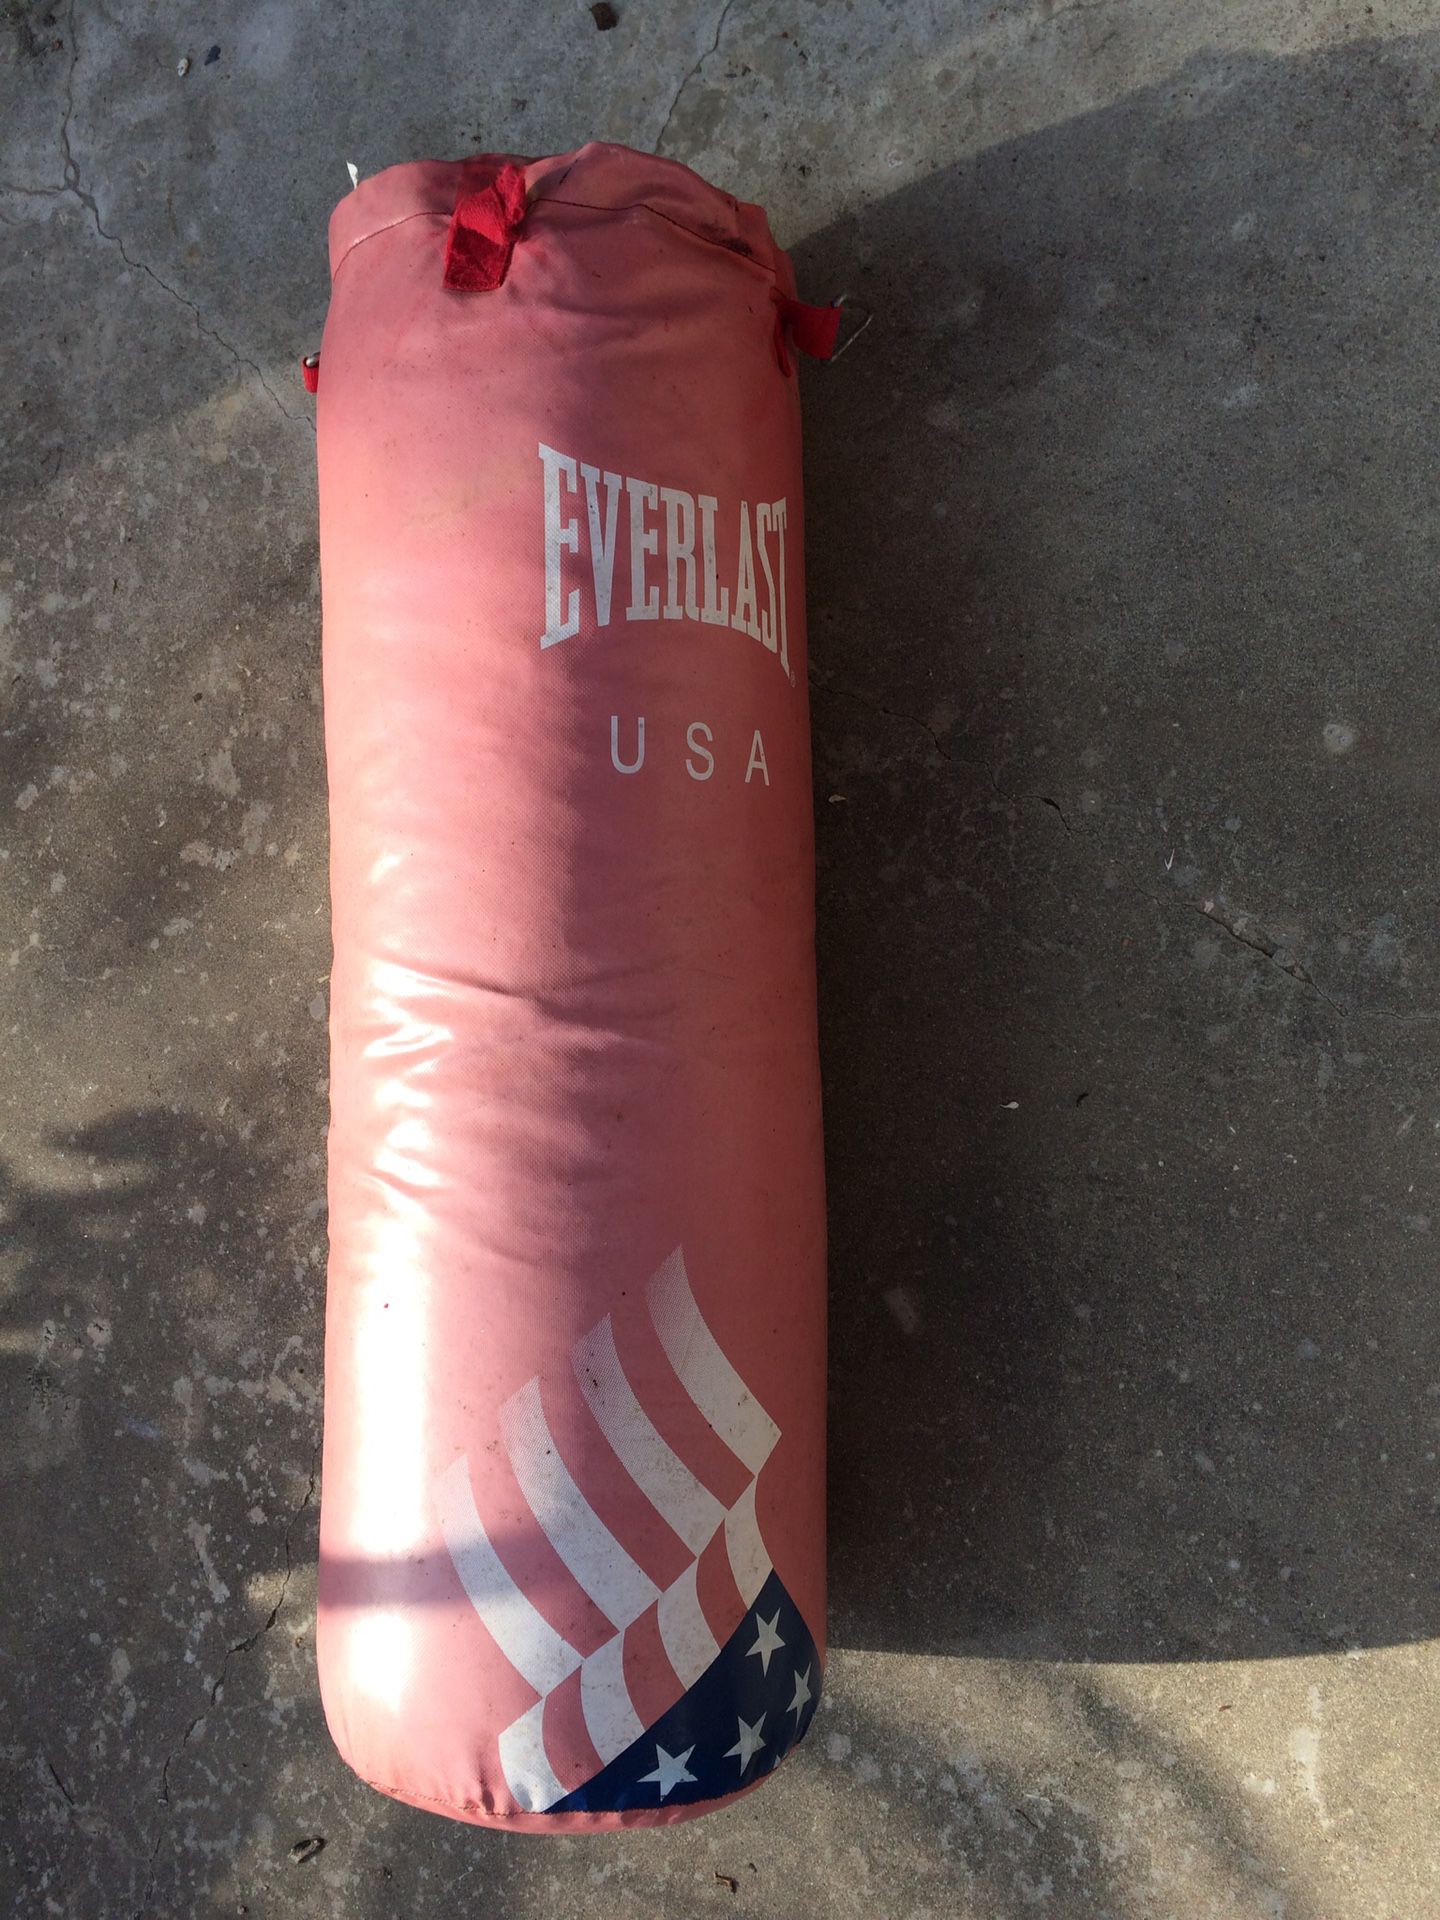 70# Everlast kicking punching boxing bag.